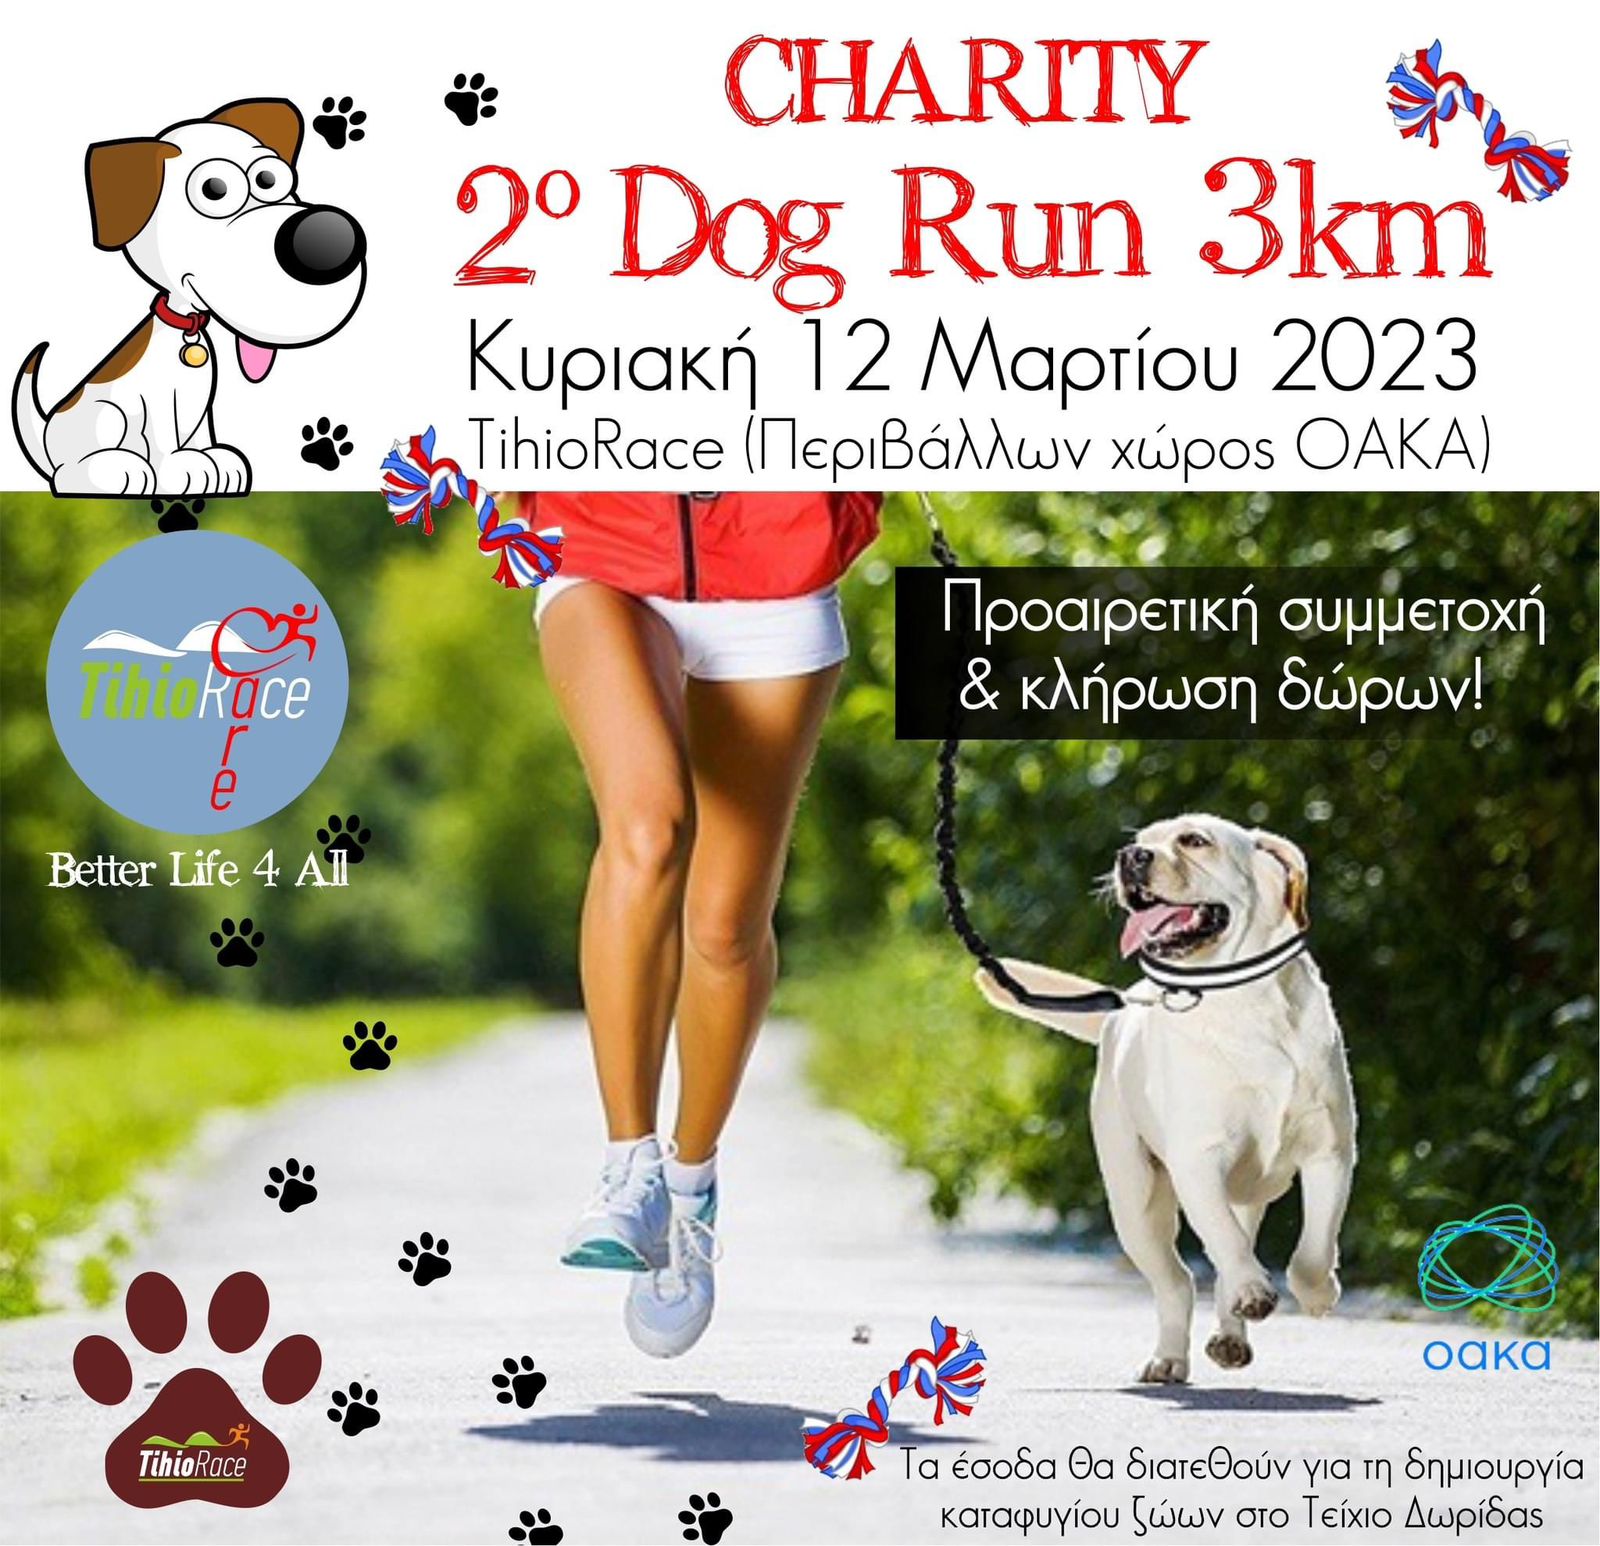 2ο Charity Dog Run